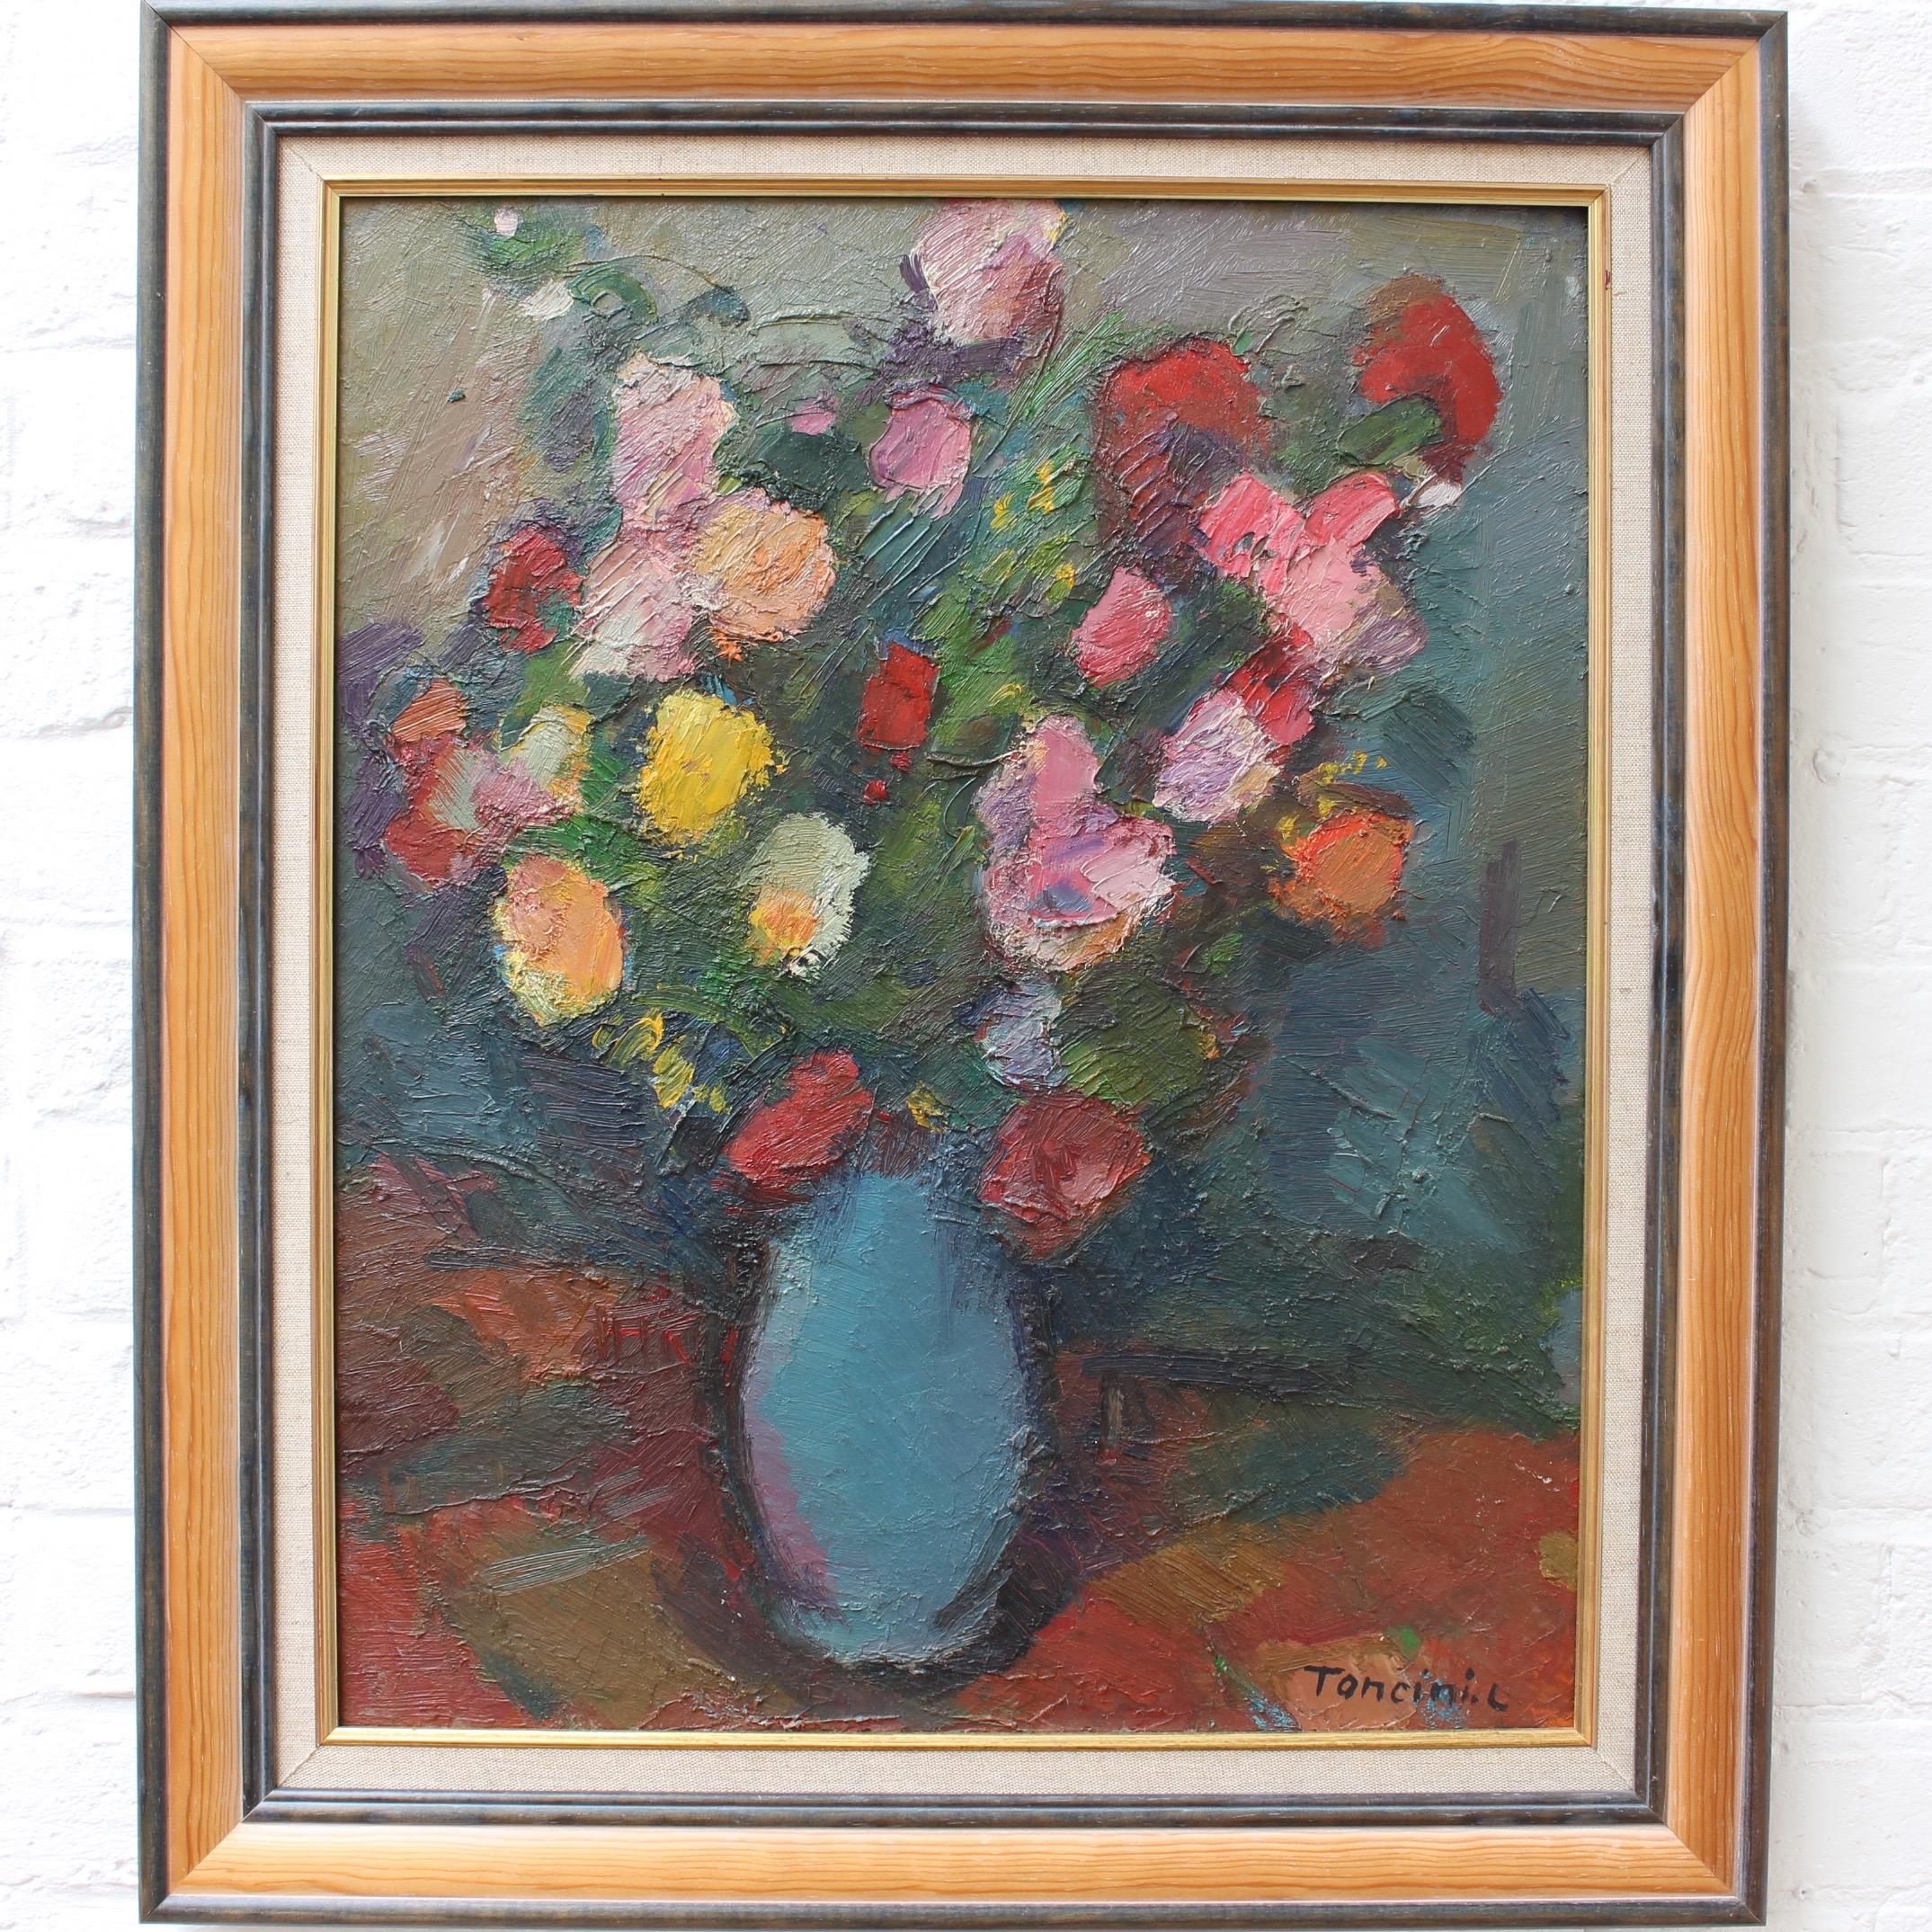 Bouquet de Fleurs au Vase Bleu - Painting by Louis Toncini